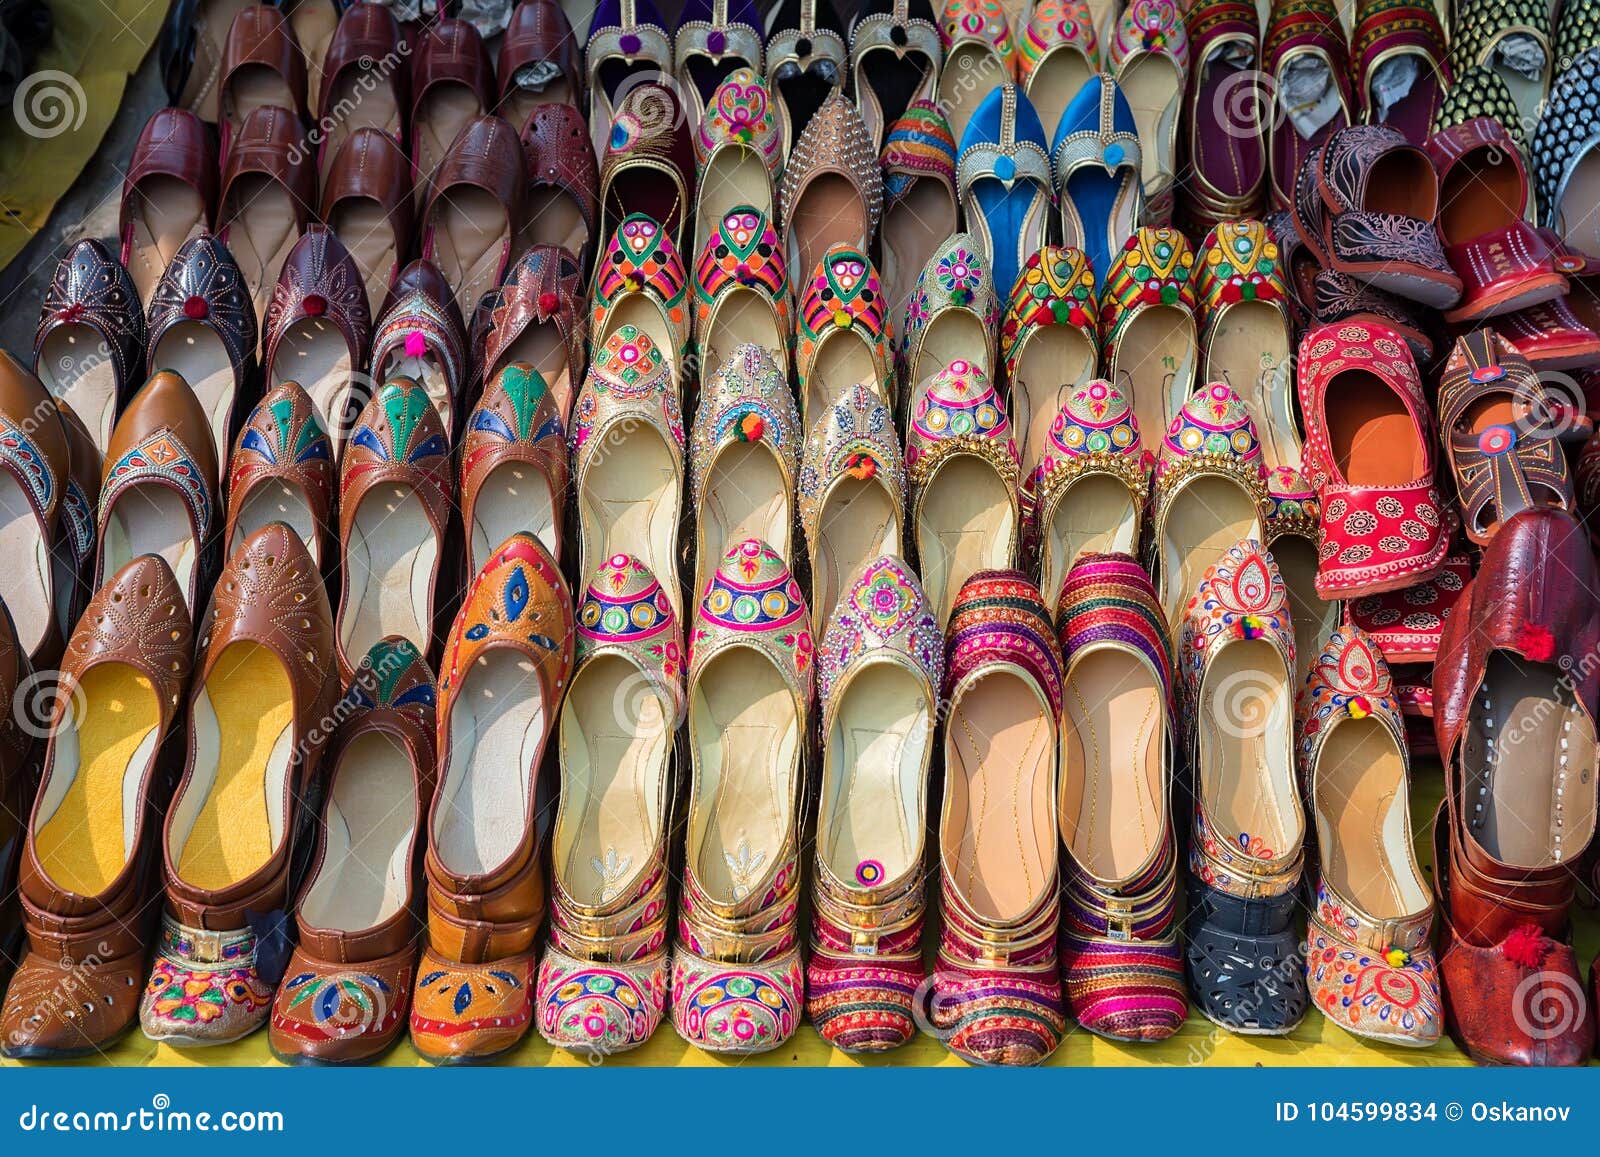 Zapatos étnicos En El Mercado En La India Foto de archivo - Imagen de cuero, hecho: 104599834